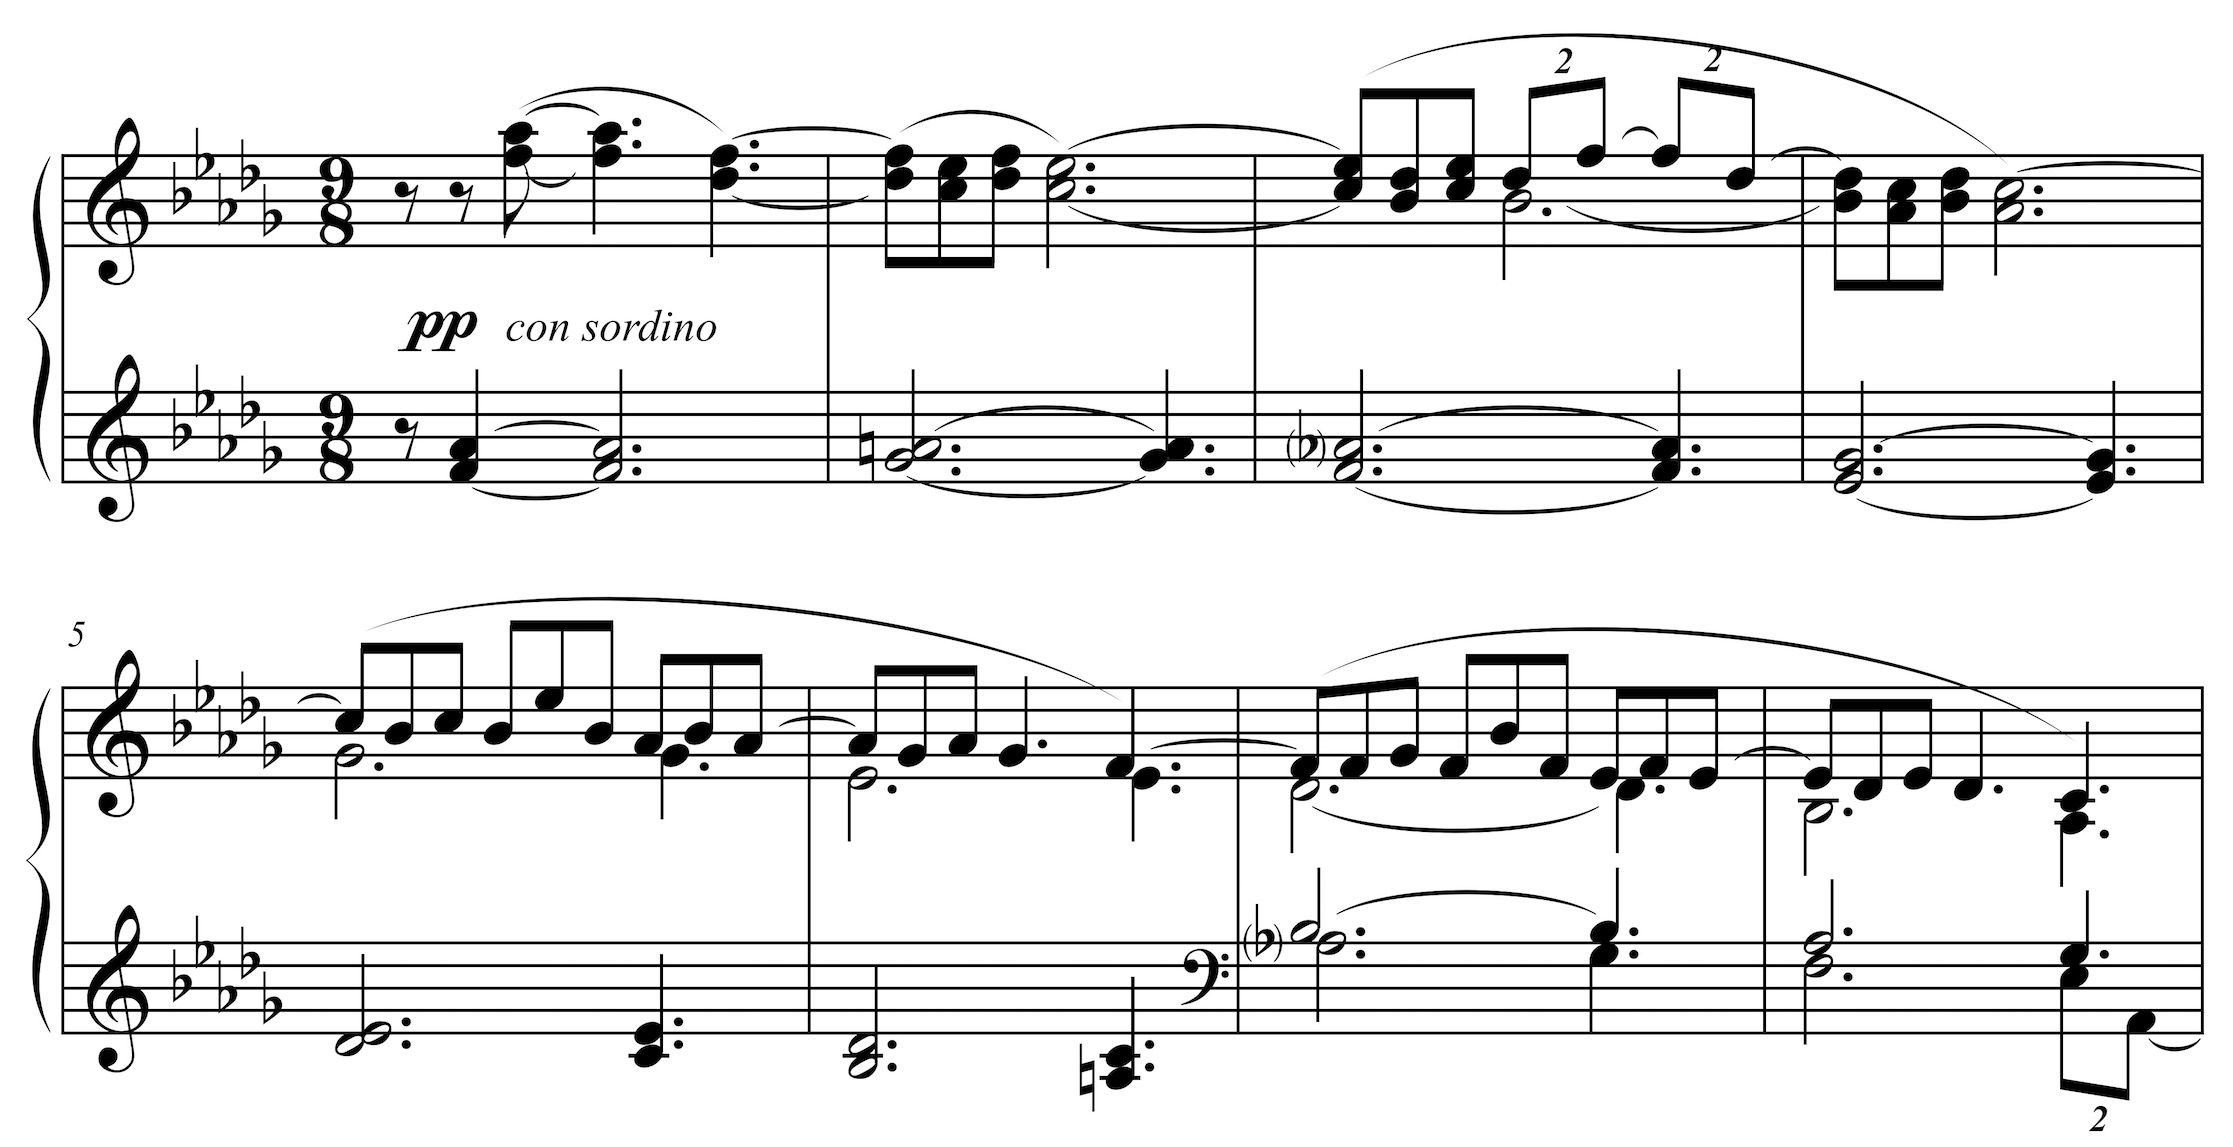 Clair de lune, 1. Thema, Takt 1-8